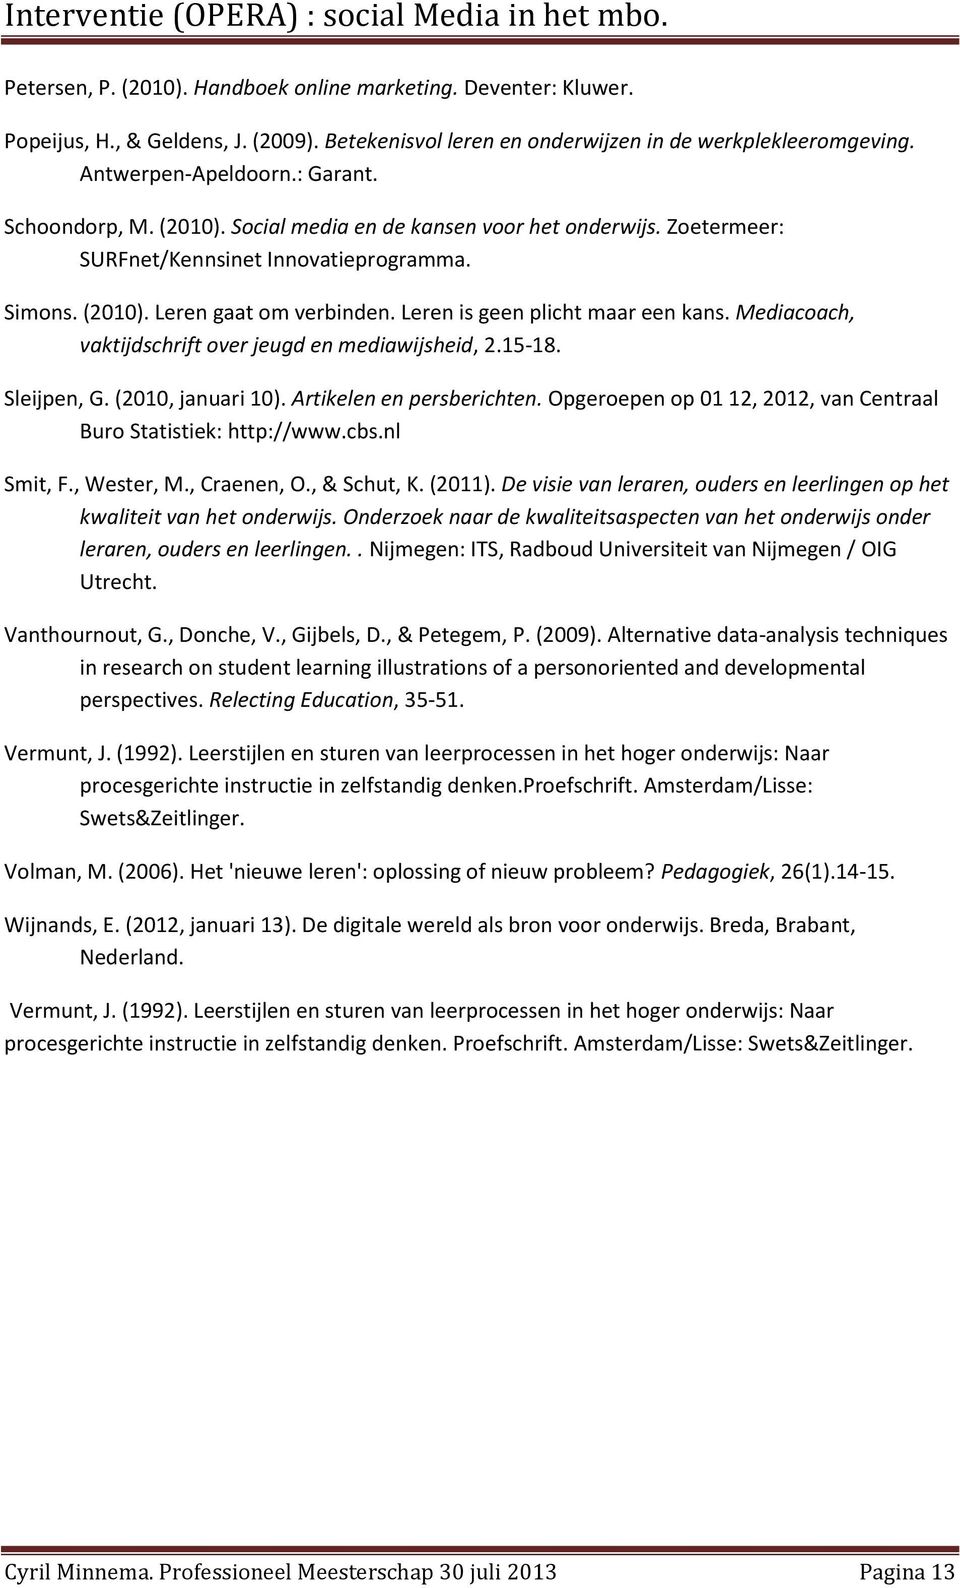 Mediacoach, vaktijdschrift over jeugd en mediawijsheid, 2.15-18. Sleijpen, G. (2010, januari 10). Artikelen en persberichten. Opgeroepen op 01 12, 2012, van Centraal Buro Statistiek: http://www.cbs.